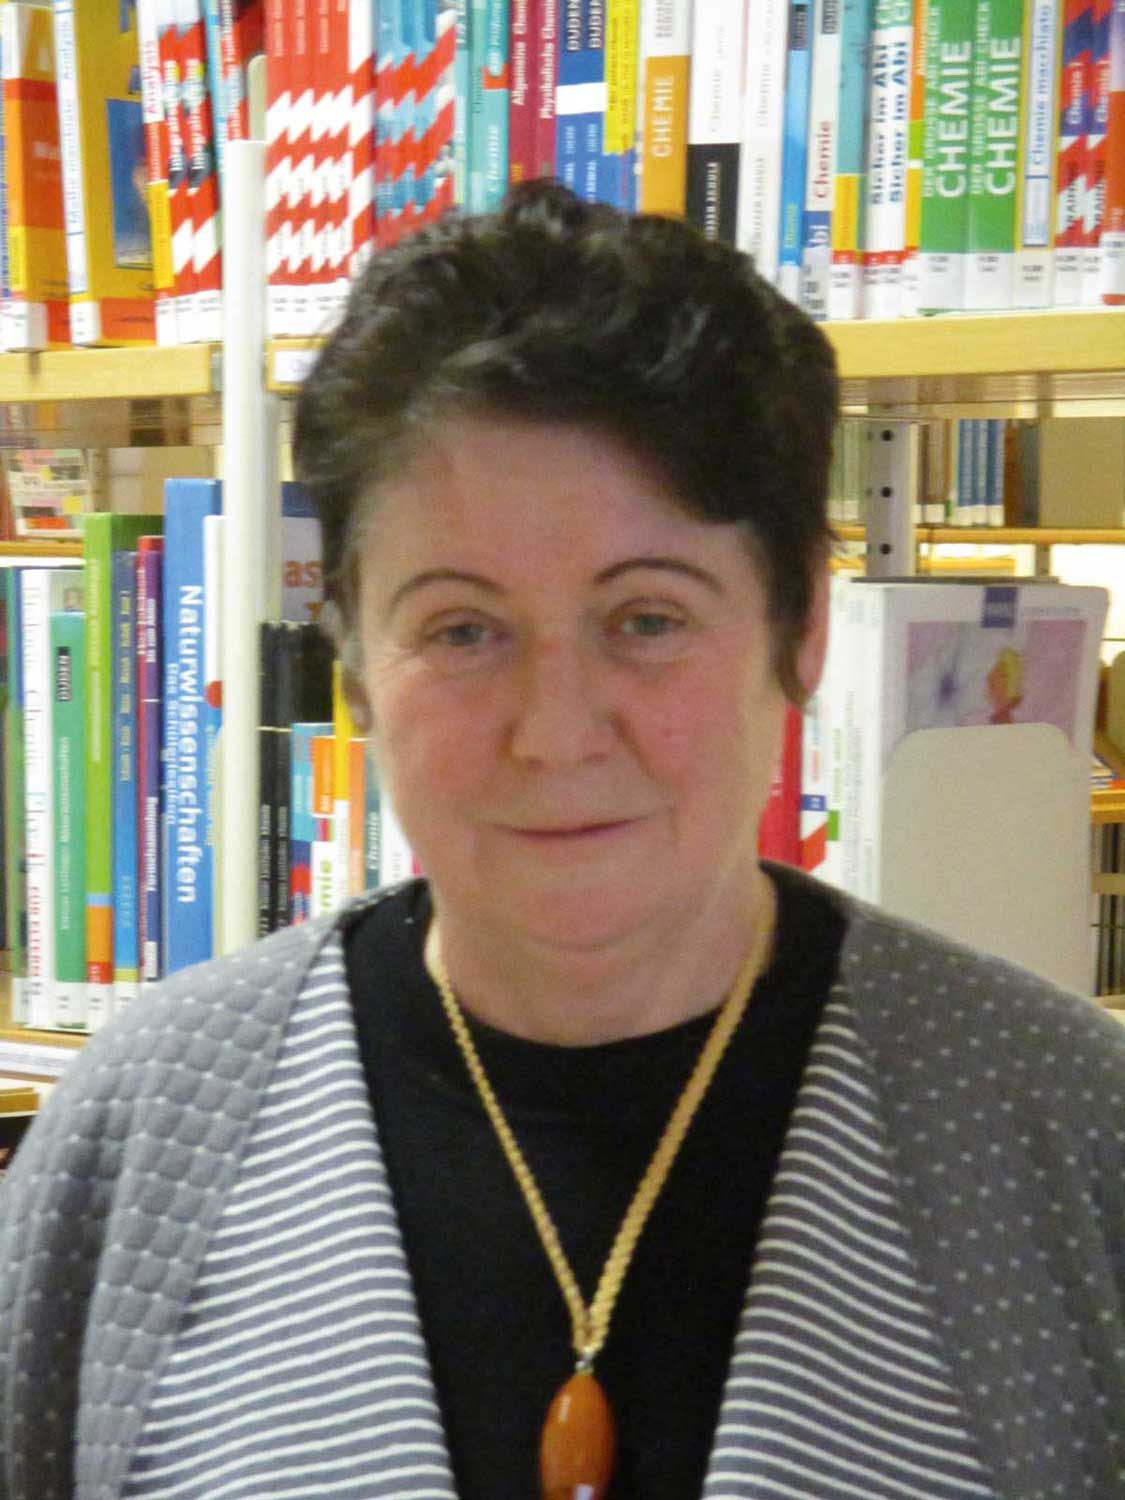 Sibylle Lucas, Vorsitzende Landesverband Sachsen-Anhalt im Deutschen Bibliotheksverband e. V., Foto: privat 